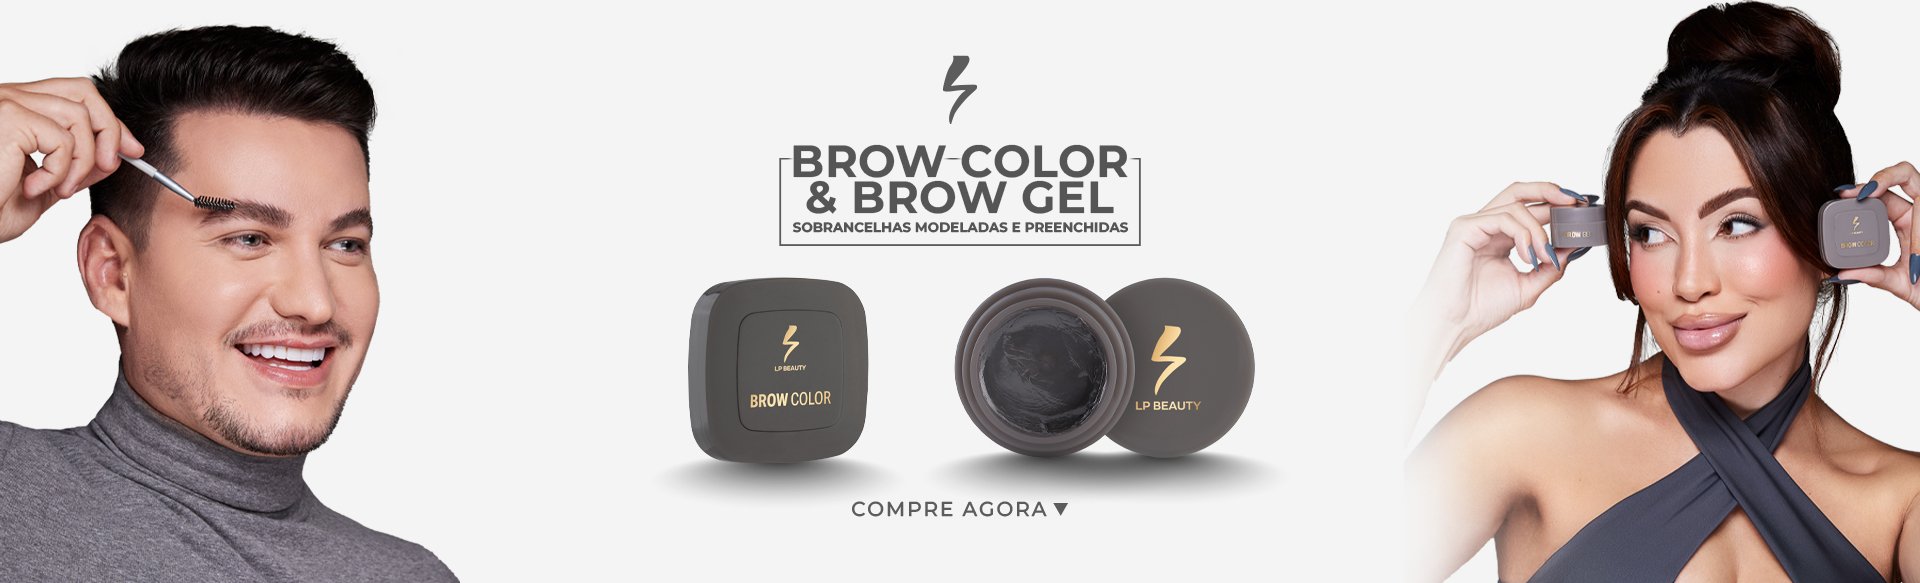 brow-color-brow-gel-8